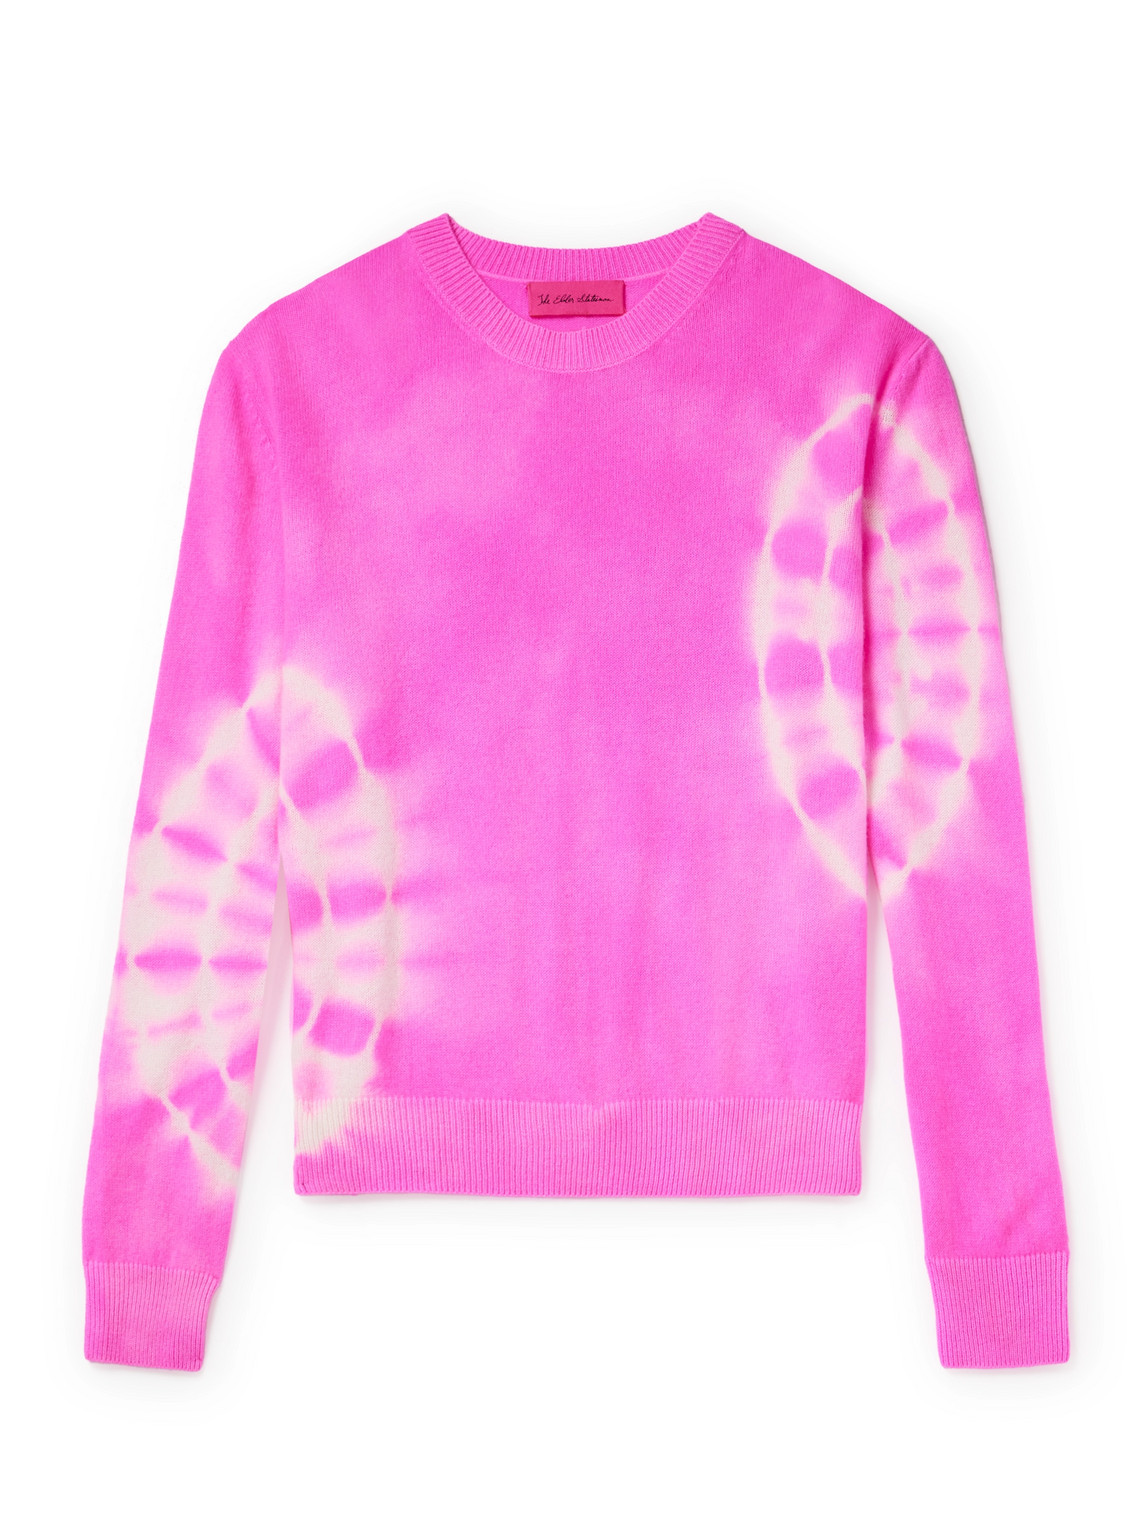 The Elder Statesman - Spiral City Tranquility Tie-Dyed Cashmere Sweater - Men - Pink - XL von The Elder Statesman